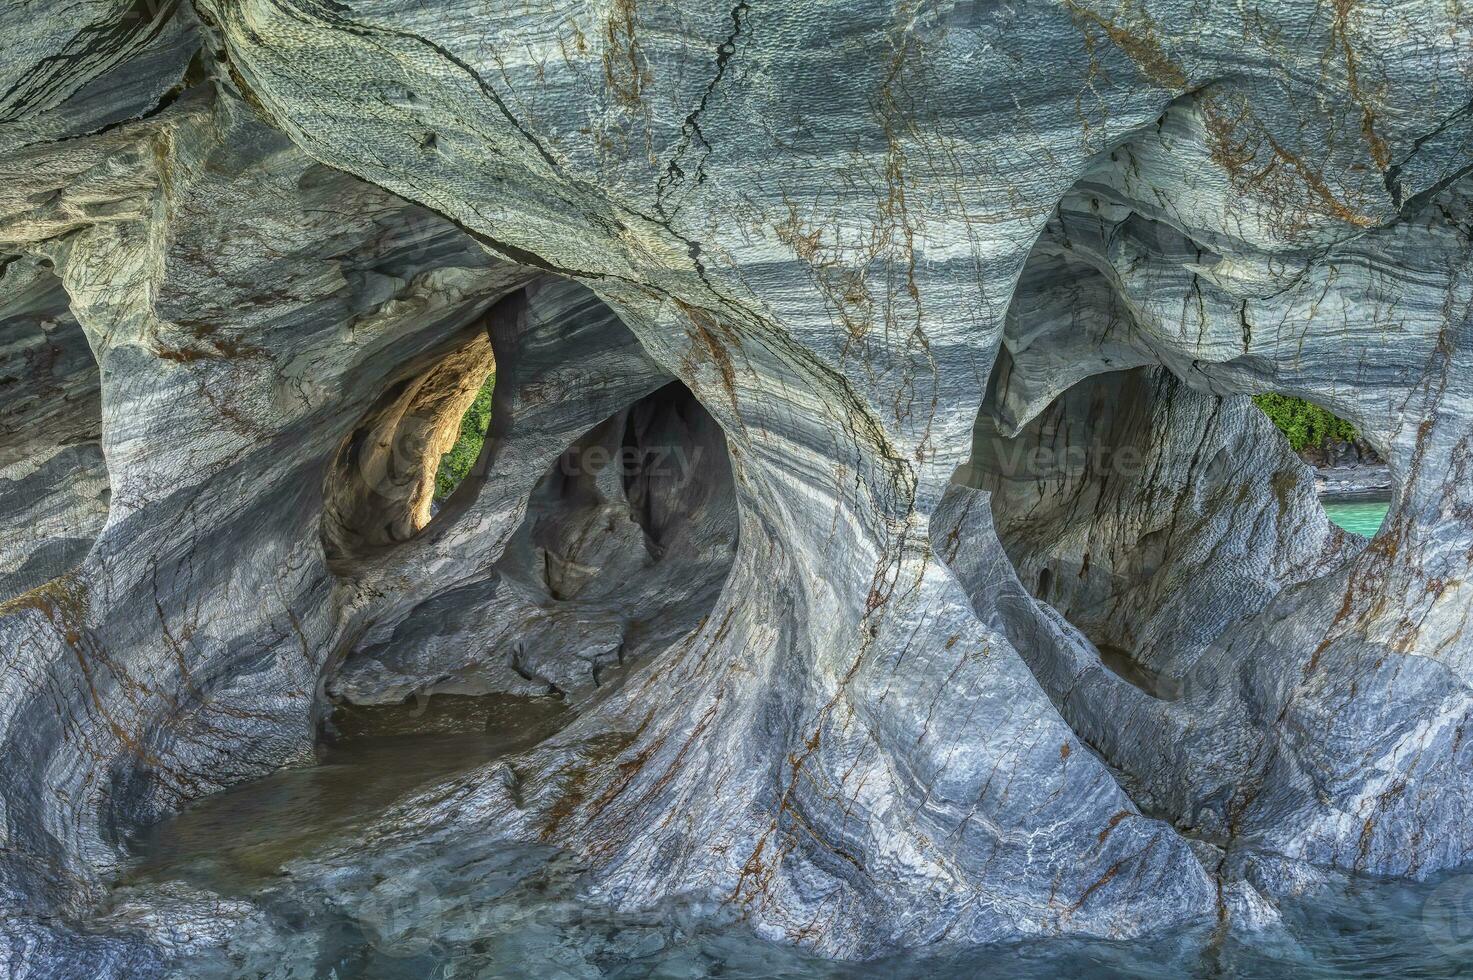 Marmor Höhlen Zuflucht, seltsam Felsen Formationen verursacht durch Wasser Erosion, Allgemeines carrera See, puerto Rio ruhig, aysen Region, Patagonien, Chile foto